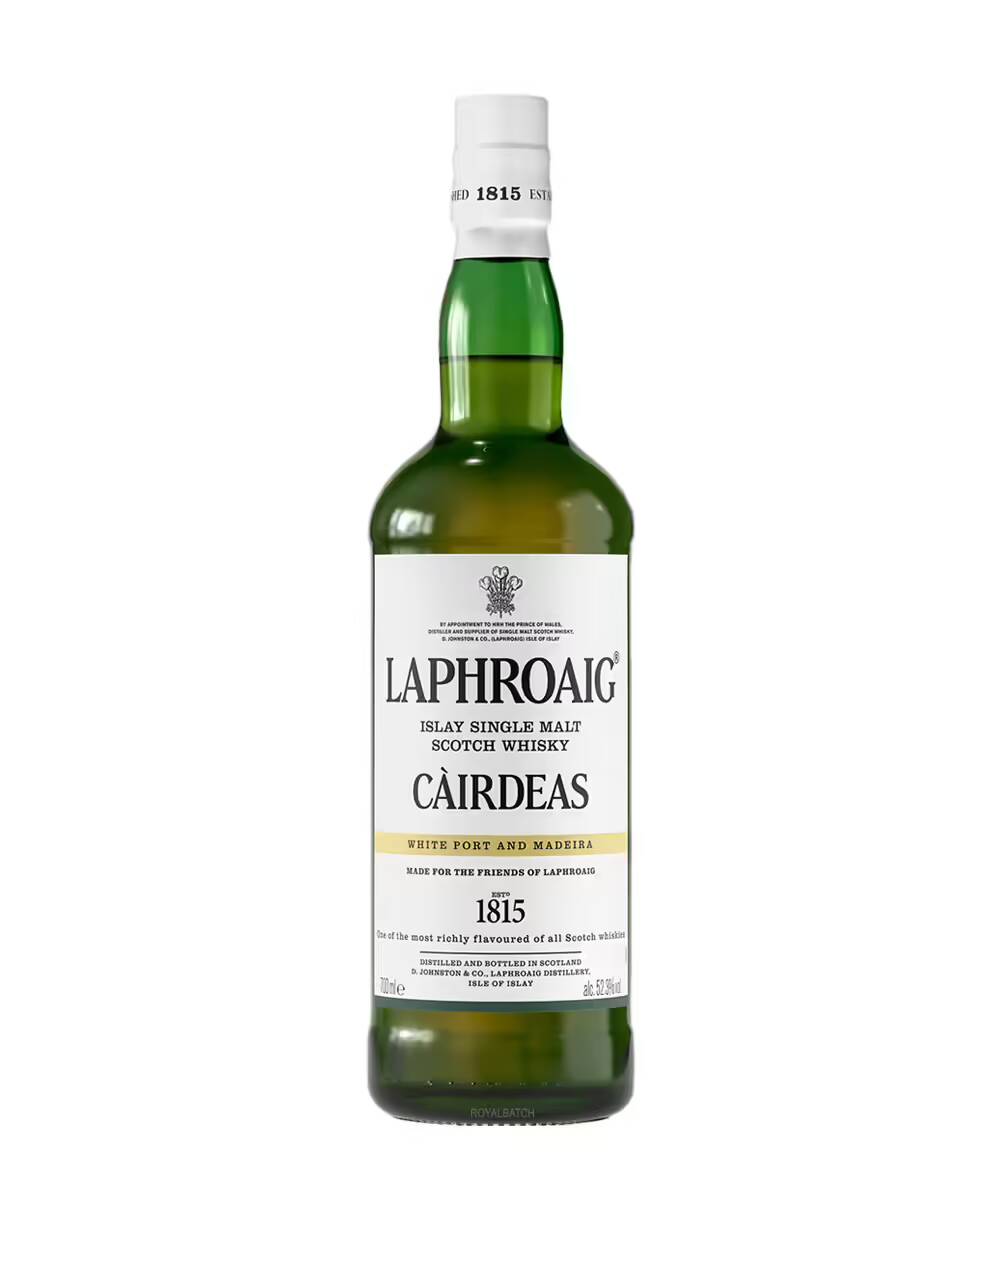 Laphroaig Cairdeas White Port and Madeira Single Malt Scotch Whisky